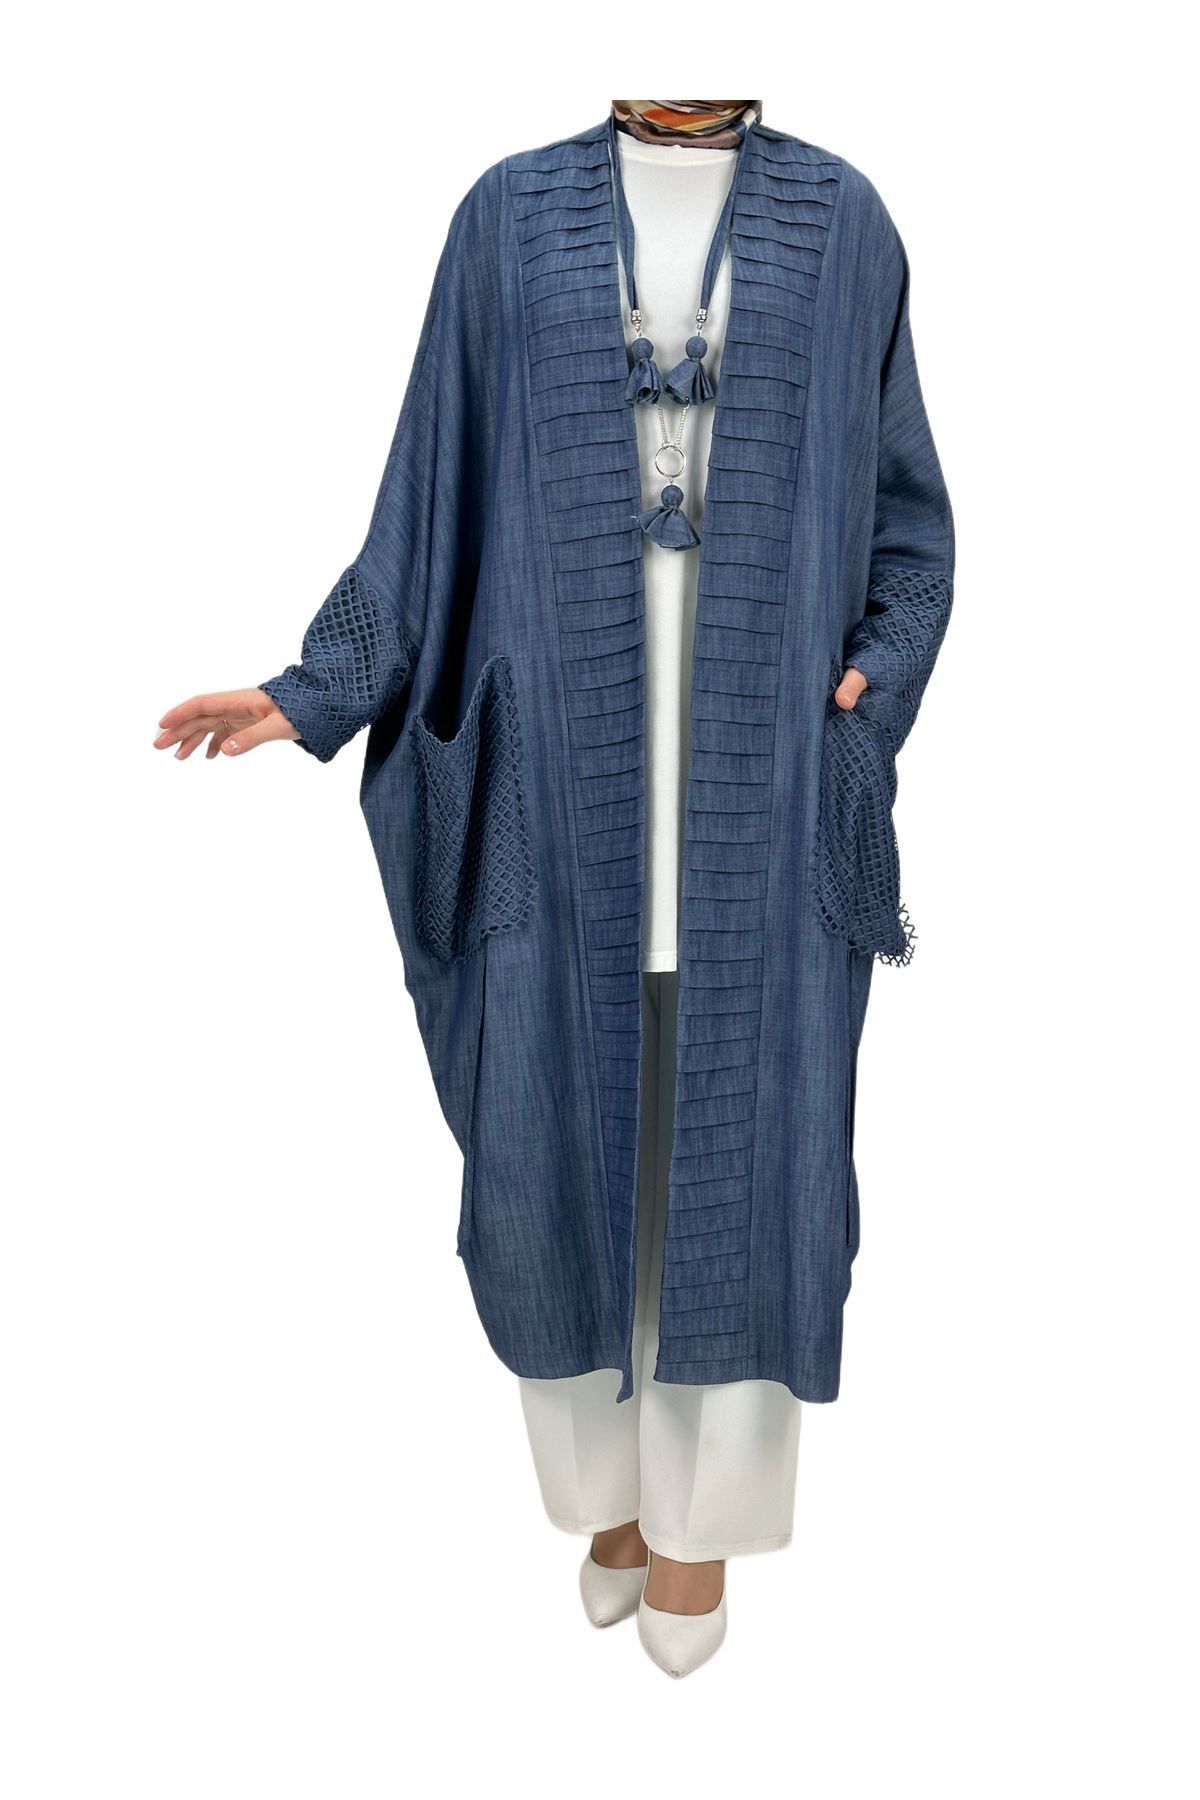 ottoman wear OTW42813 Büyük Beden Kot Kimono ve İçlik Takım Mavi